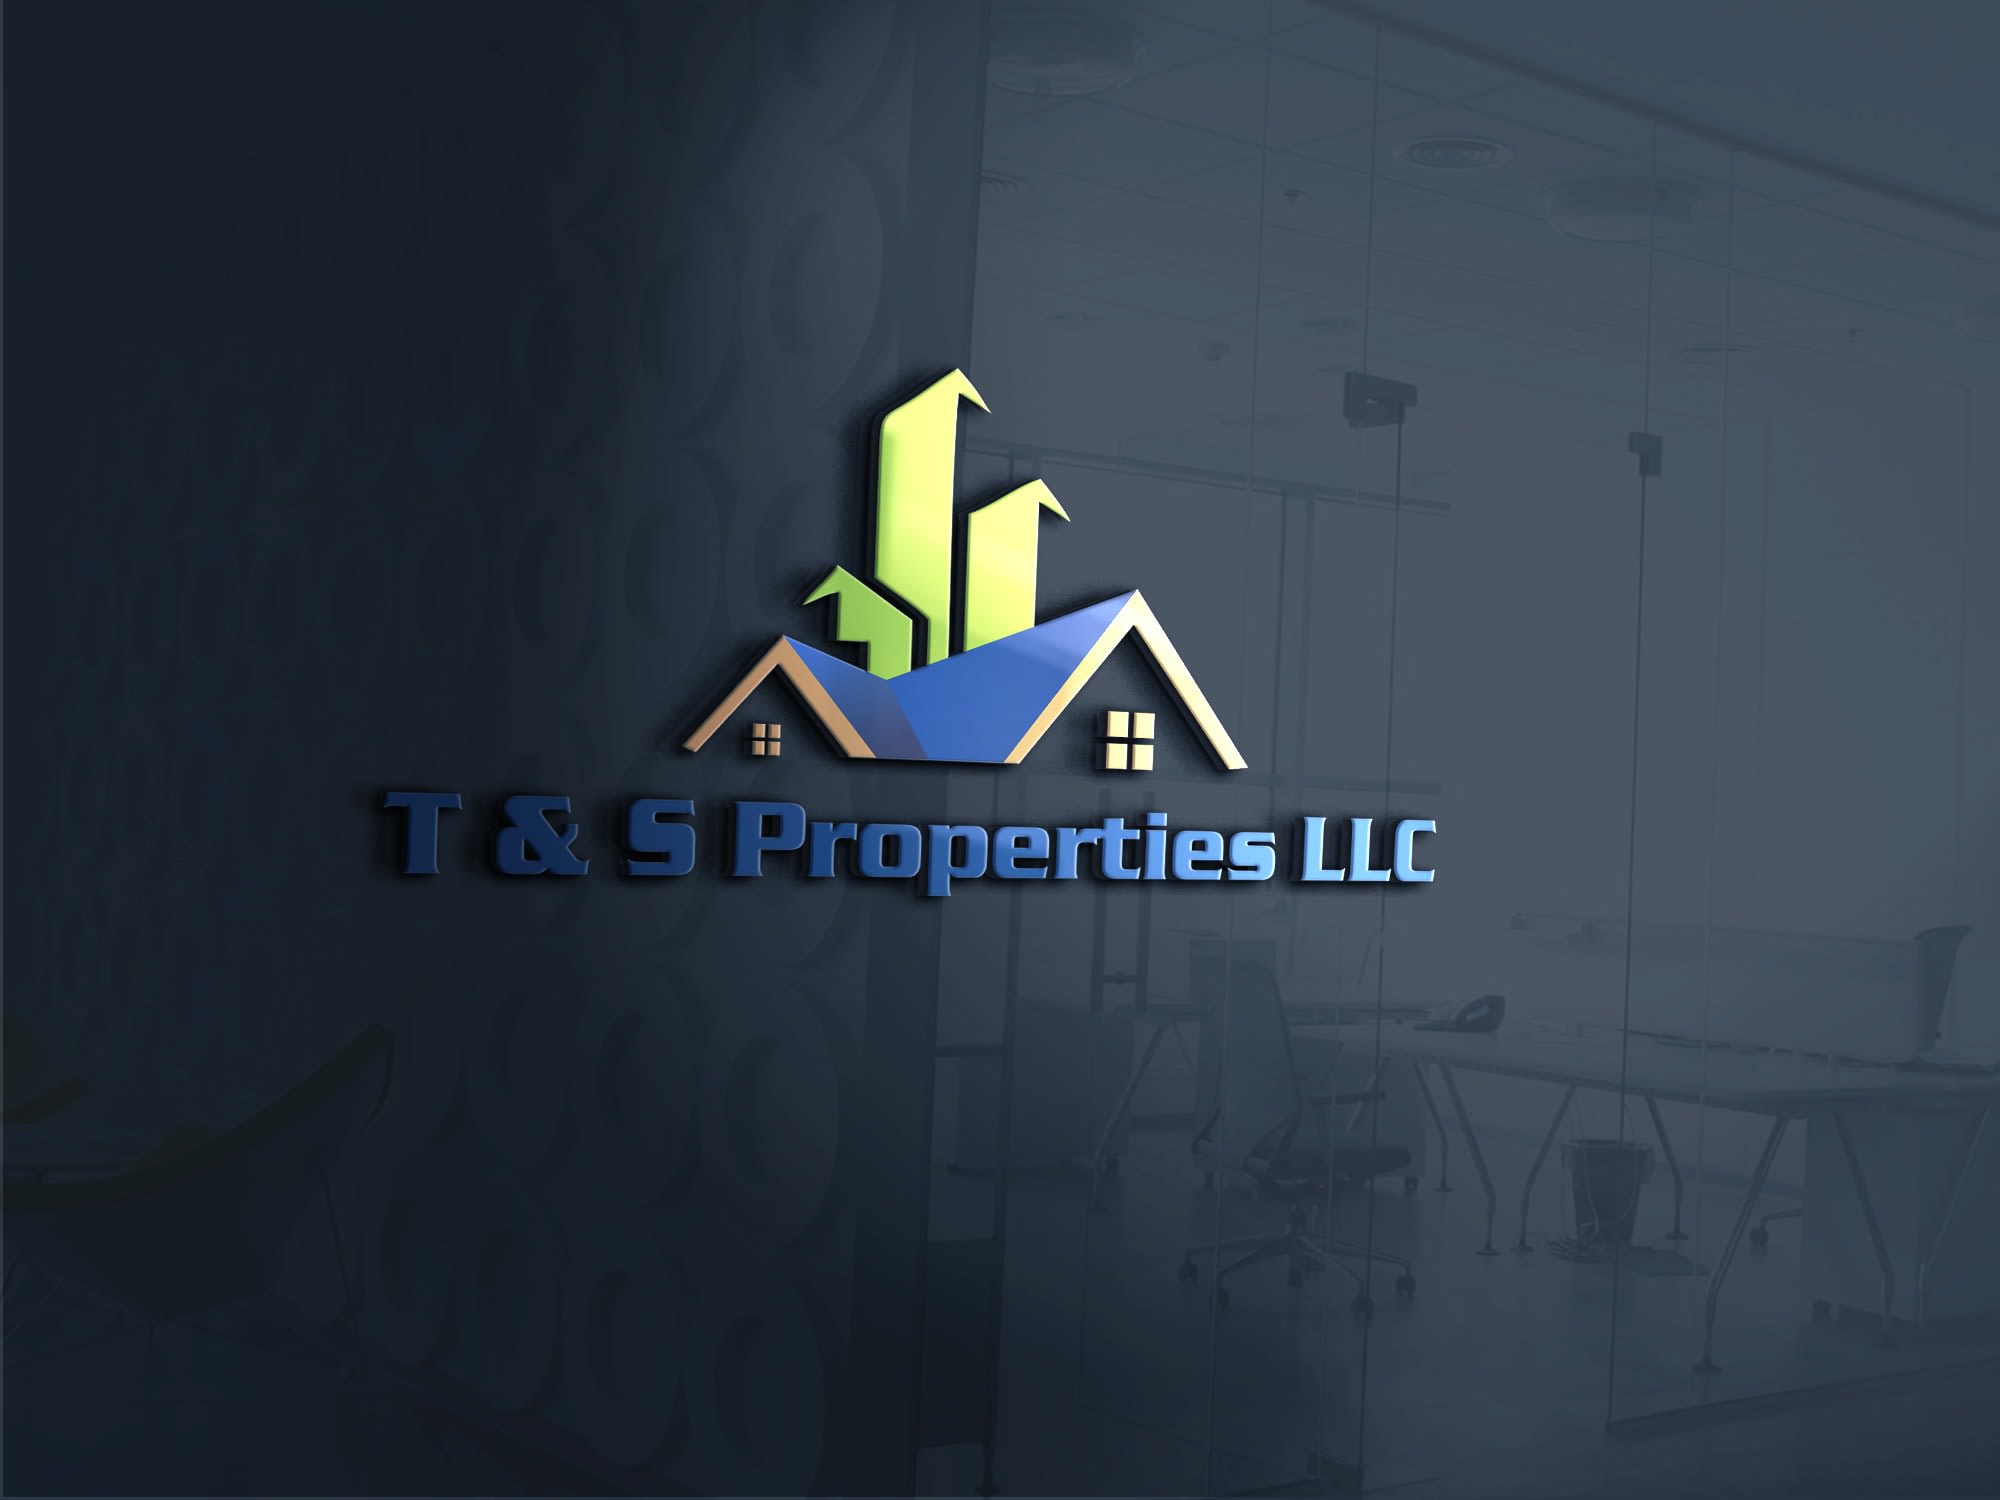 T & S Properties